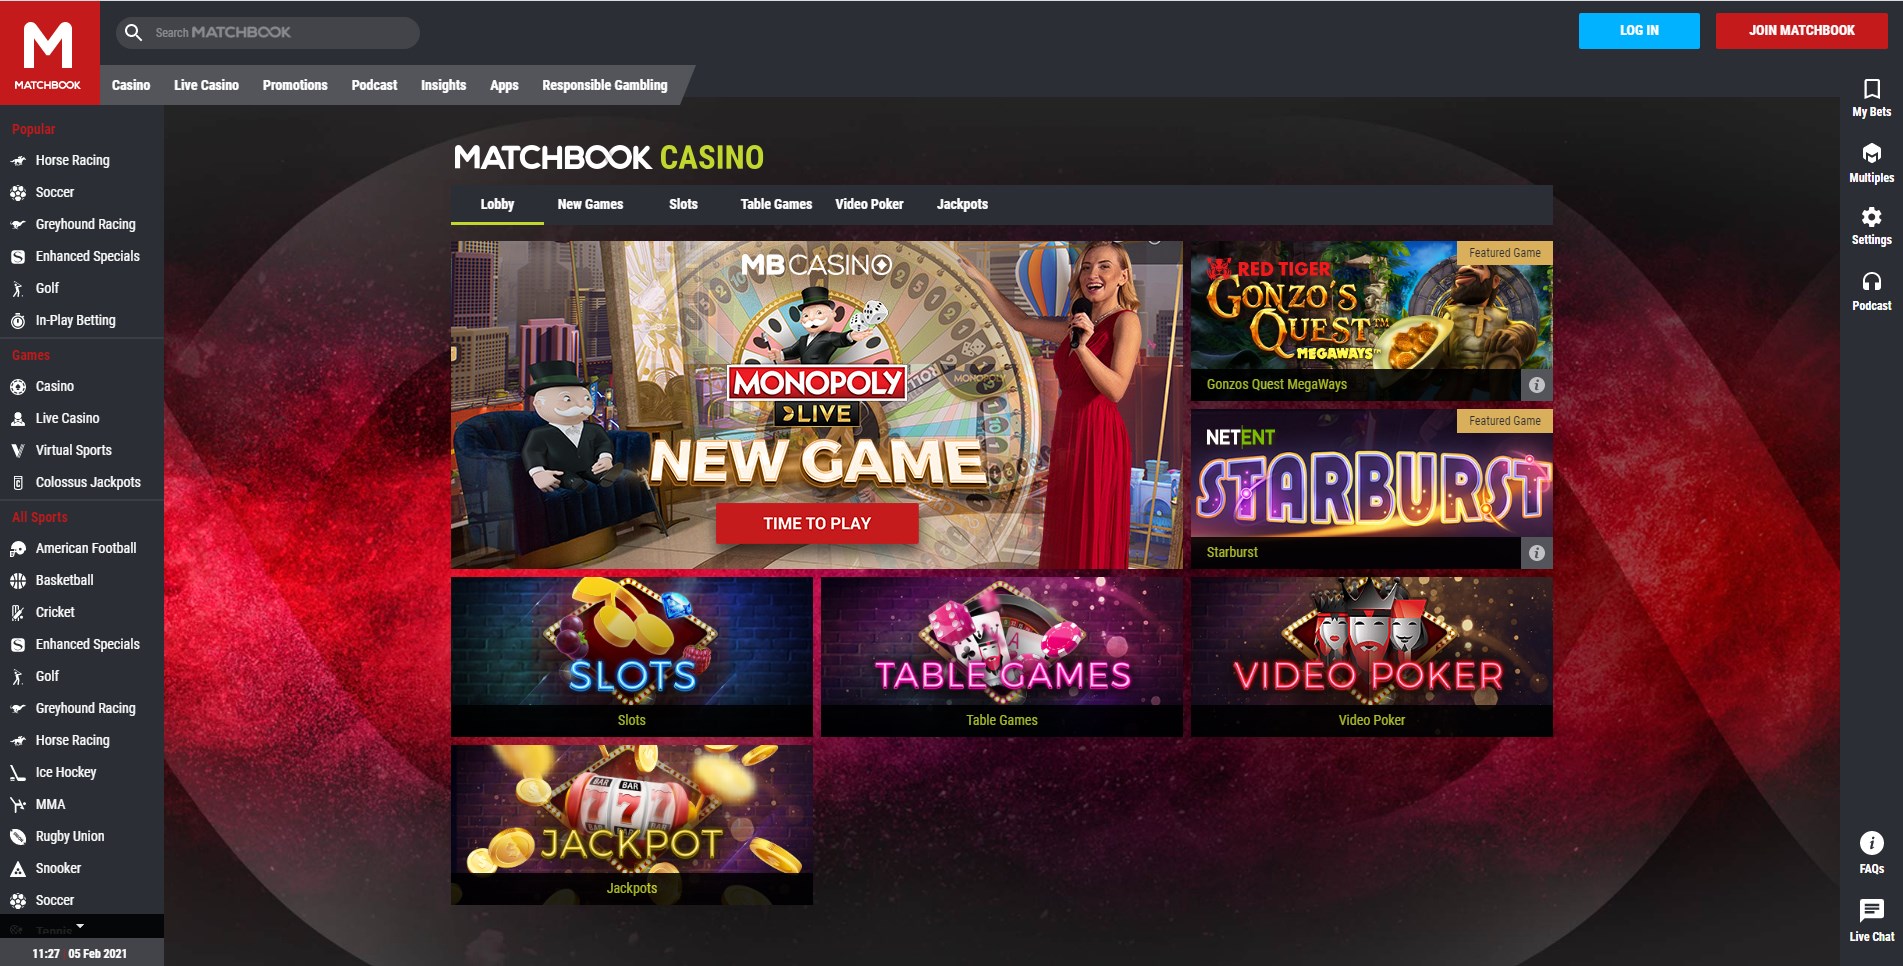 Matchbook Casino Games